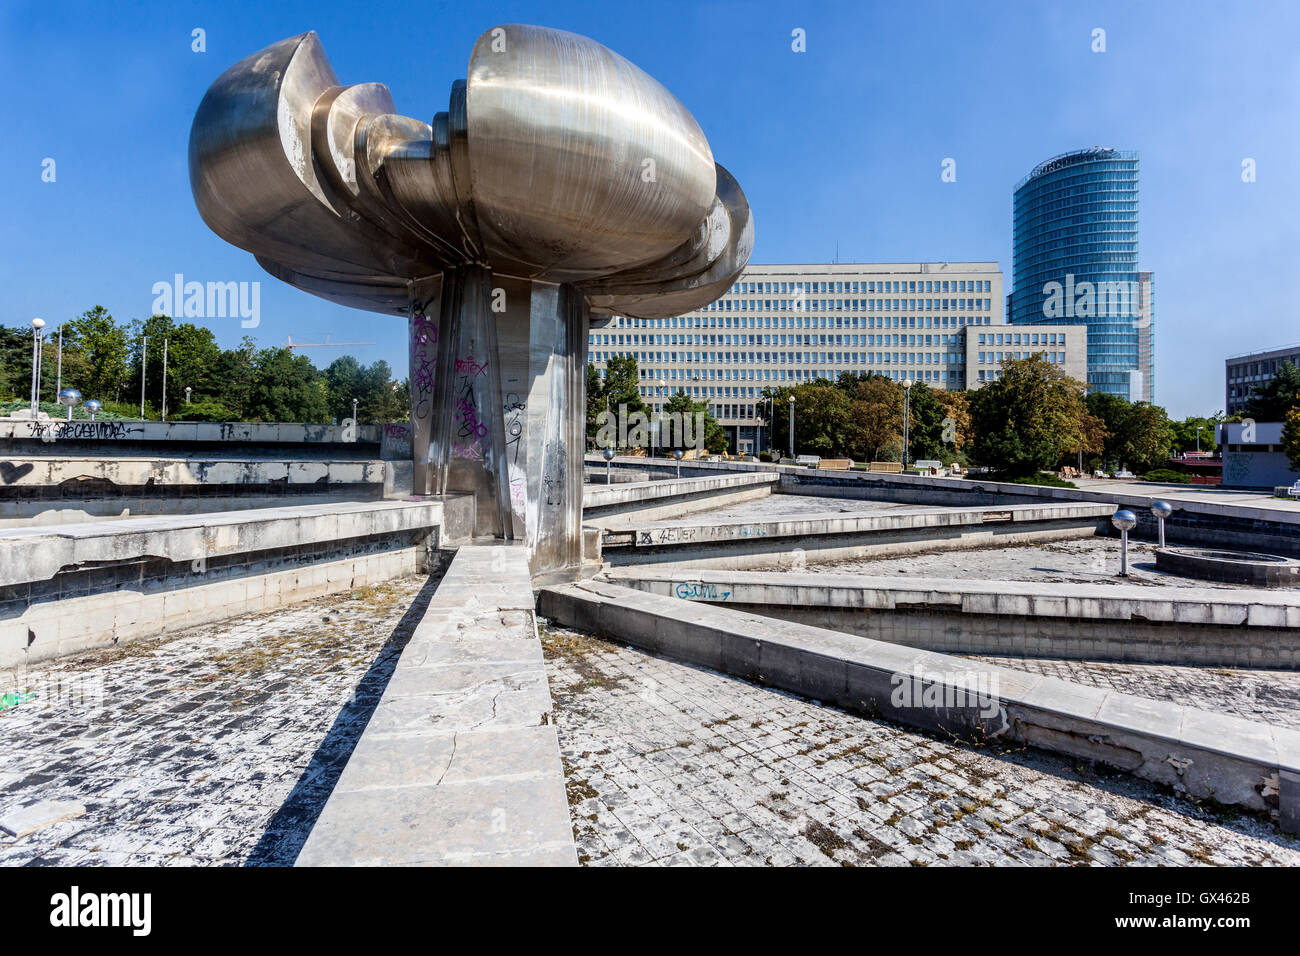 Sculpture socialiste en panne de fontaine sur la place de la liberté, Bratislava statues Slovaquie, Europe Banque D'Images